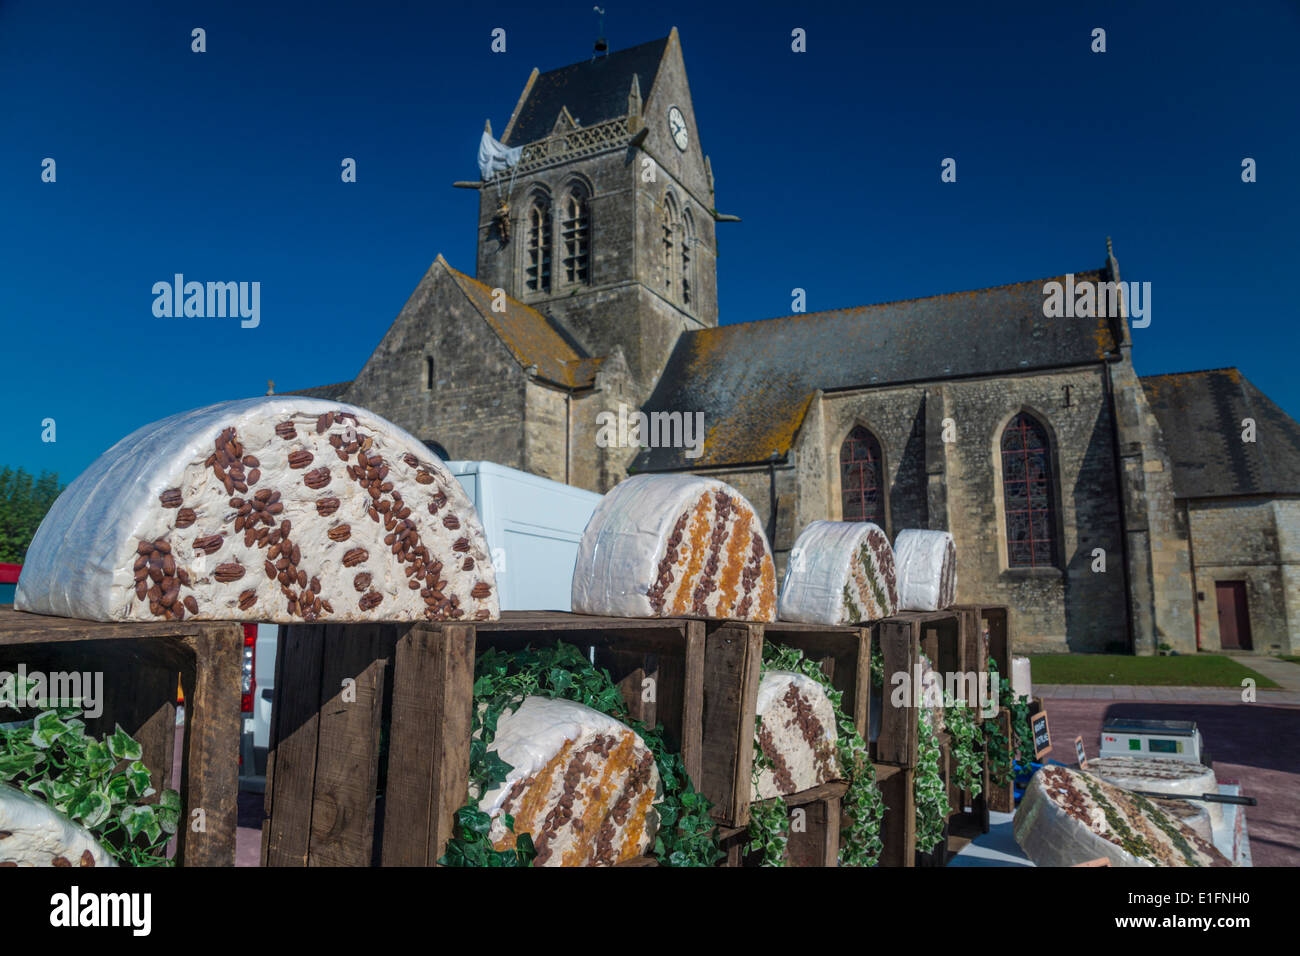 Jour de marché à l'Hôpital Sainte-Anne. Mere-Eglise, Normandie. Rouleaux de nougat en face de l'église .Efigy de parachutiste suspendu au clocher. Banque D'Images